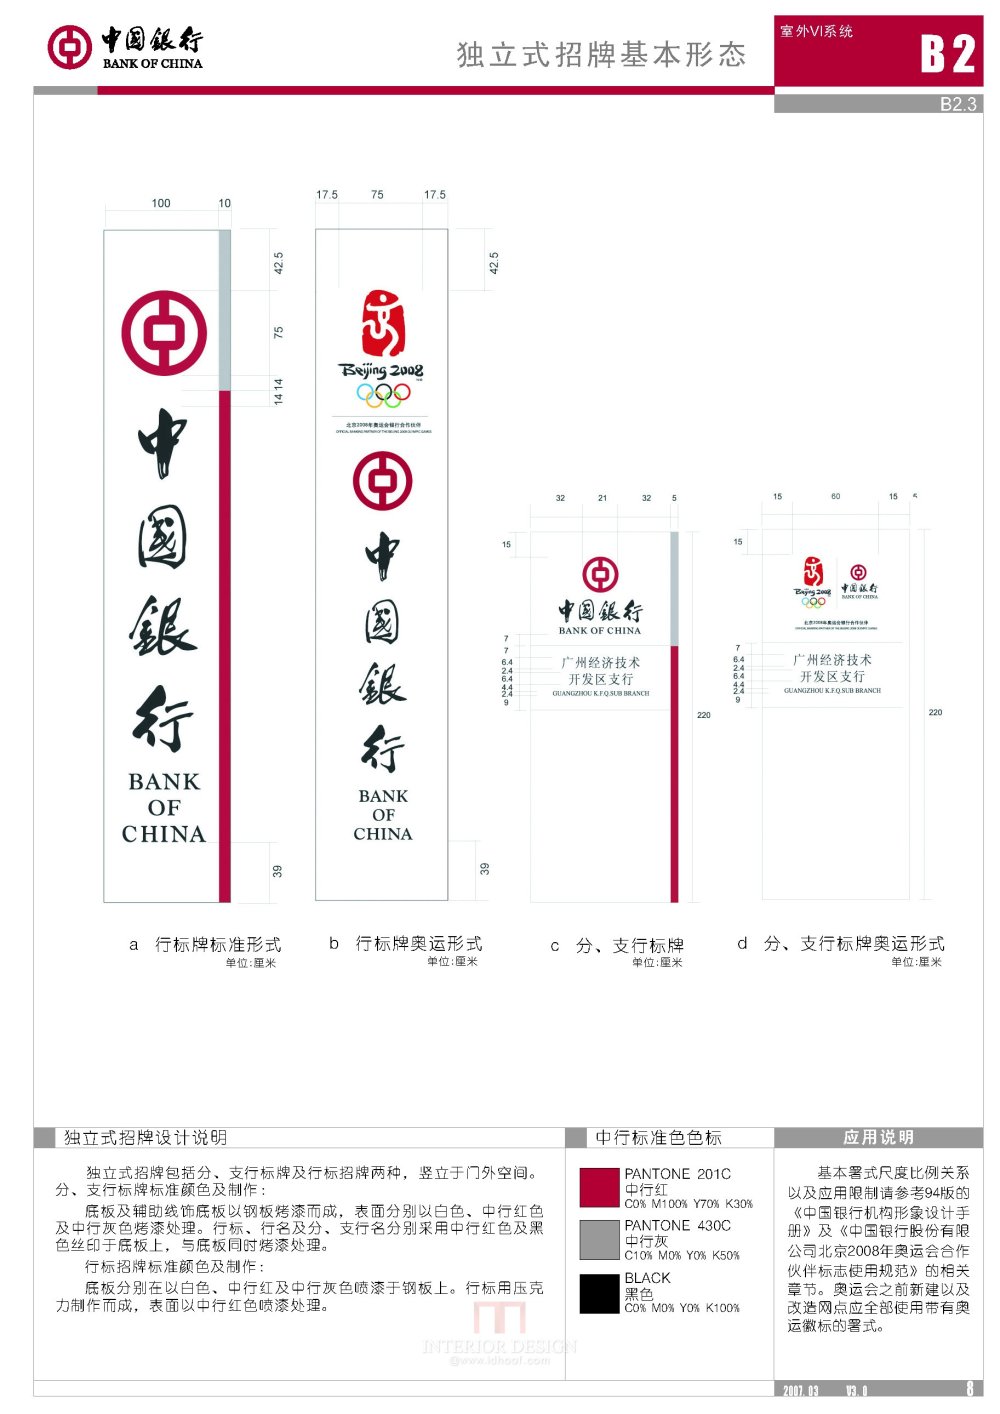 学会银行设计 中国银行形象标准化手册V3.0版_中国银行形象标准化手册V3.0版_页面_014.jpg